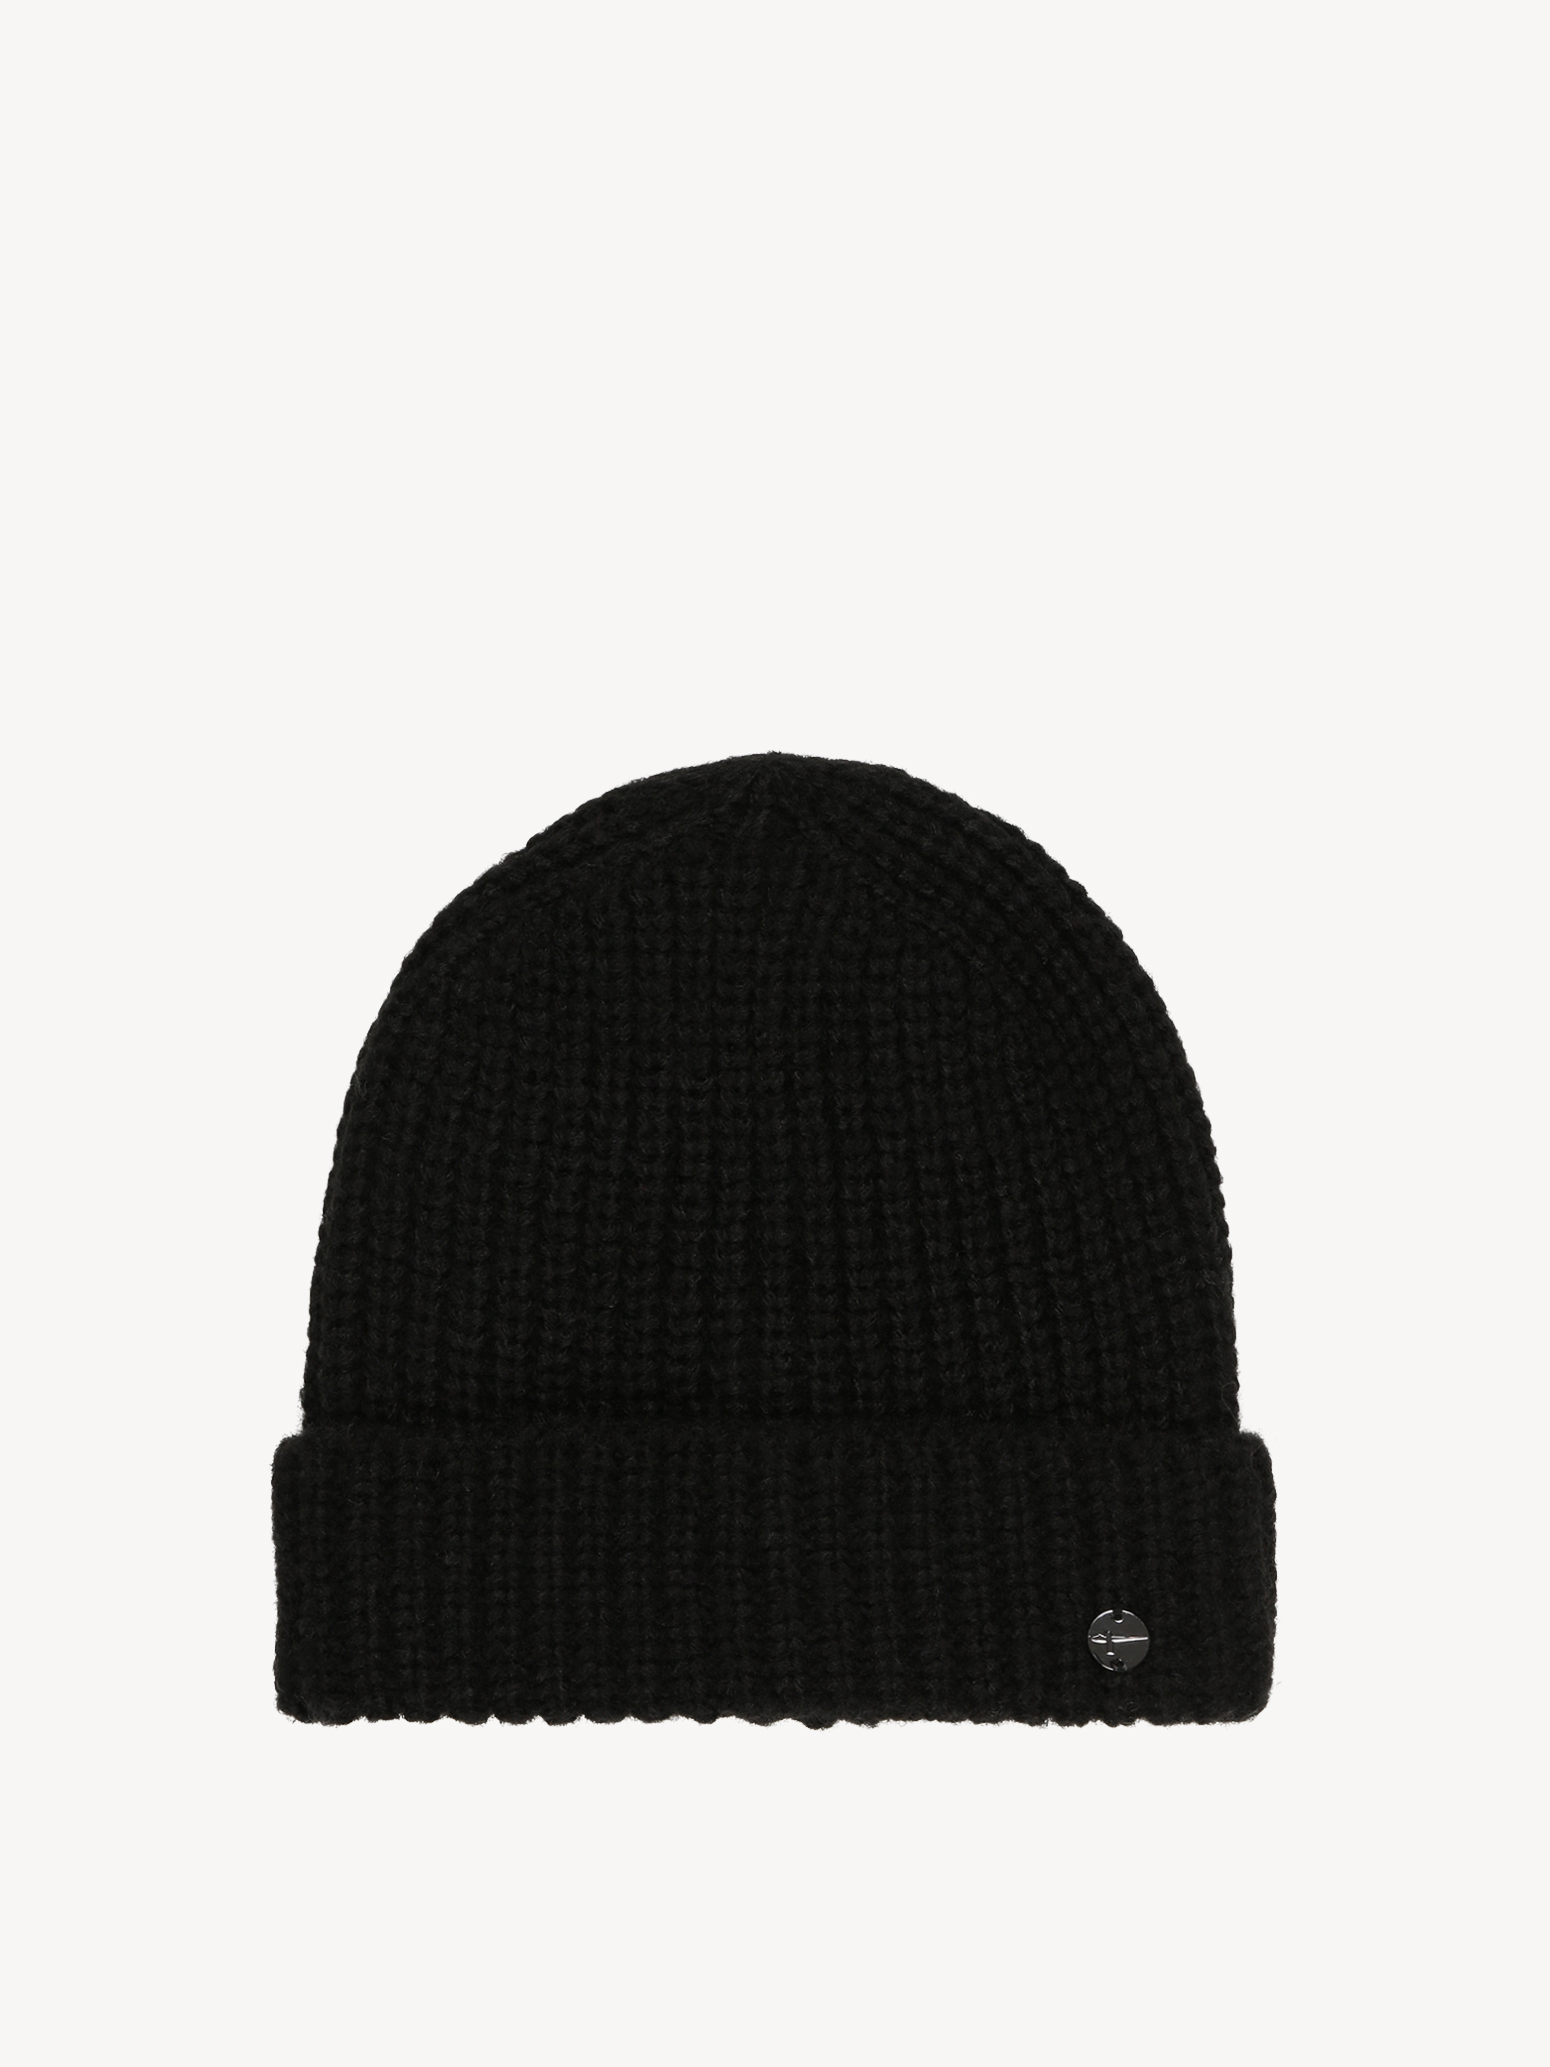 Mütze - schwarz TCW0009-80004: Tamaris Mützen & Hüte online kaufen!